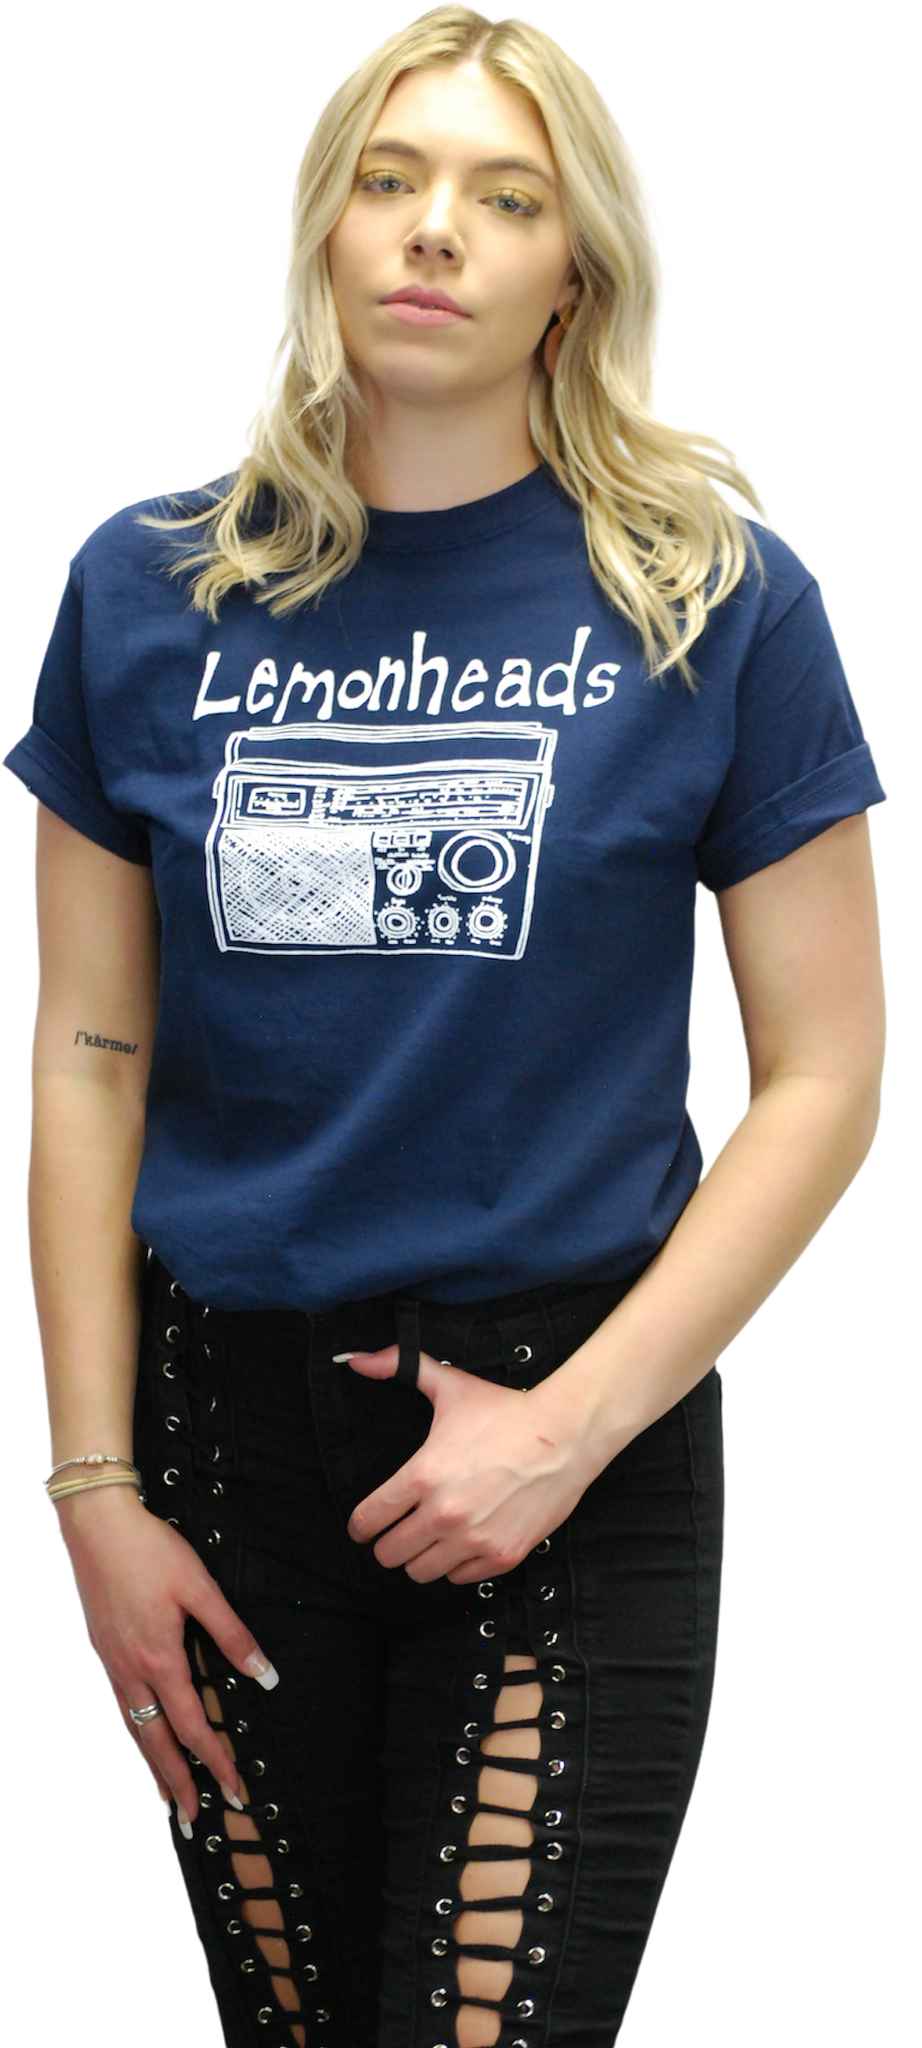 LEMONHEADS "RADIO" T-SHIRT